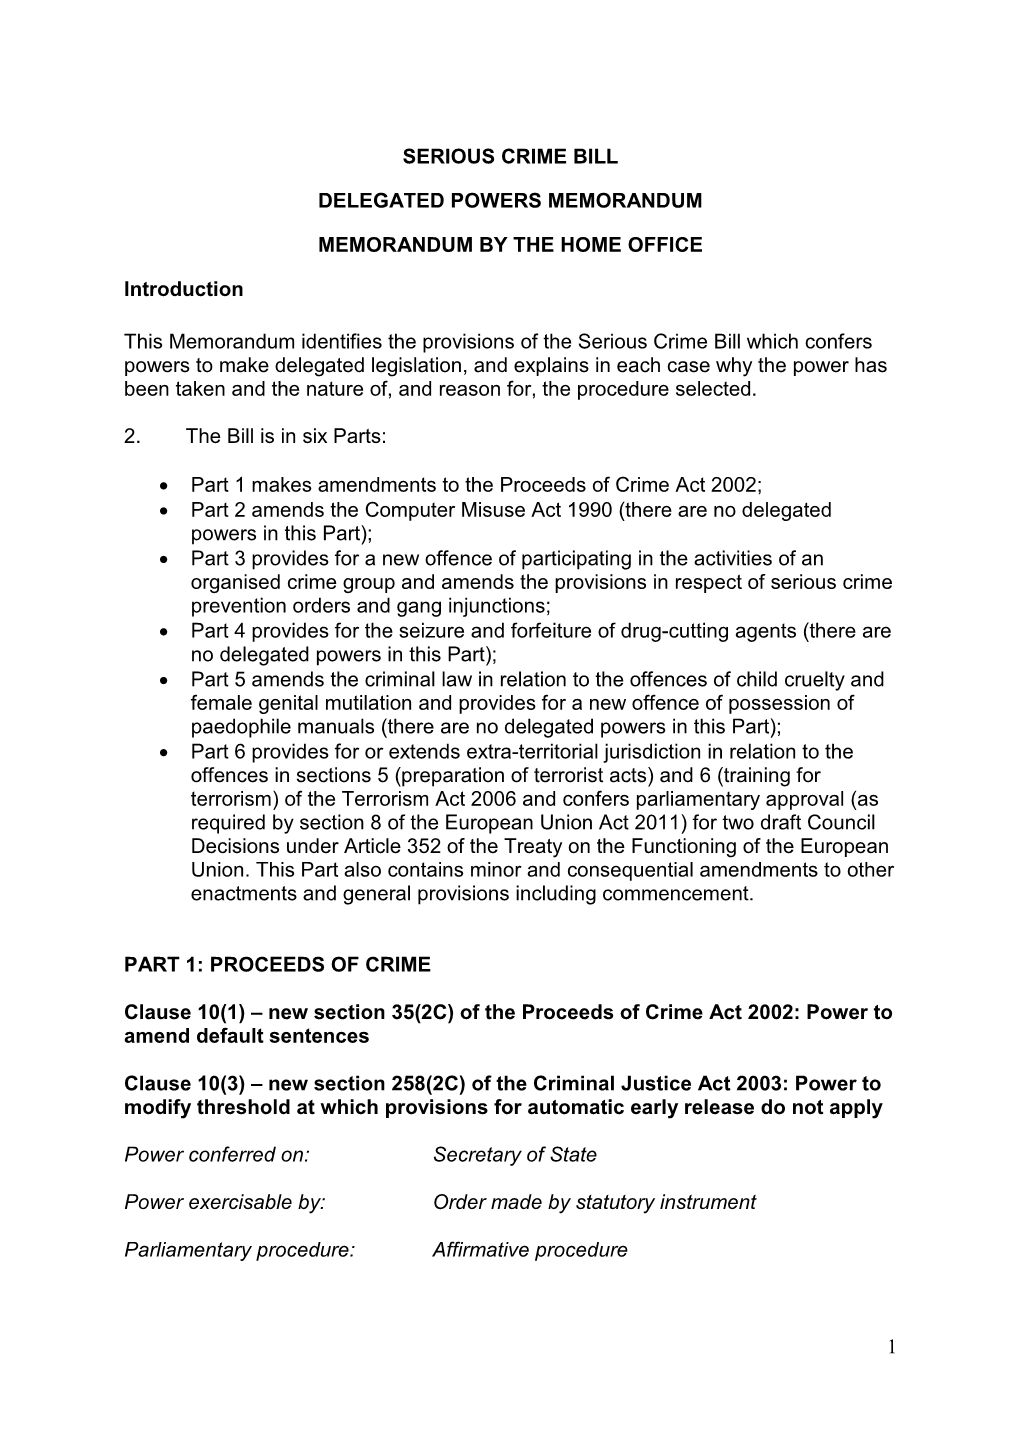 Delegated Powers Memorandum